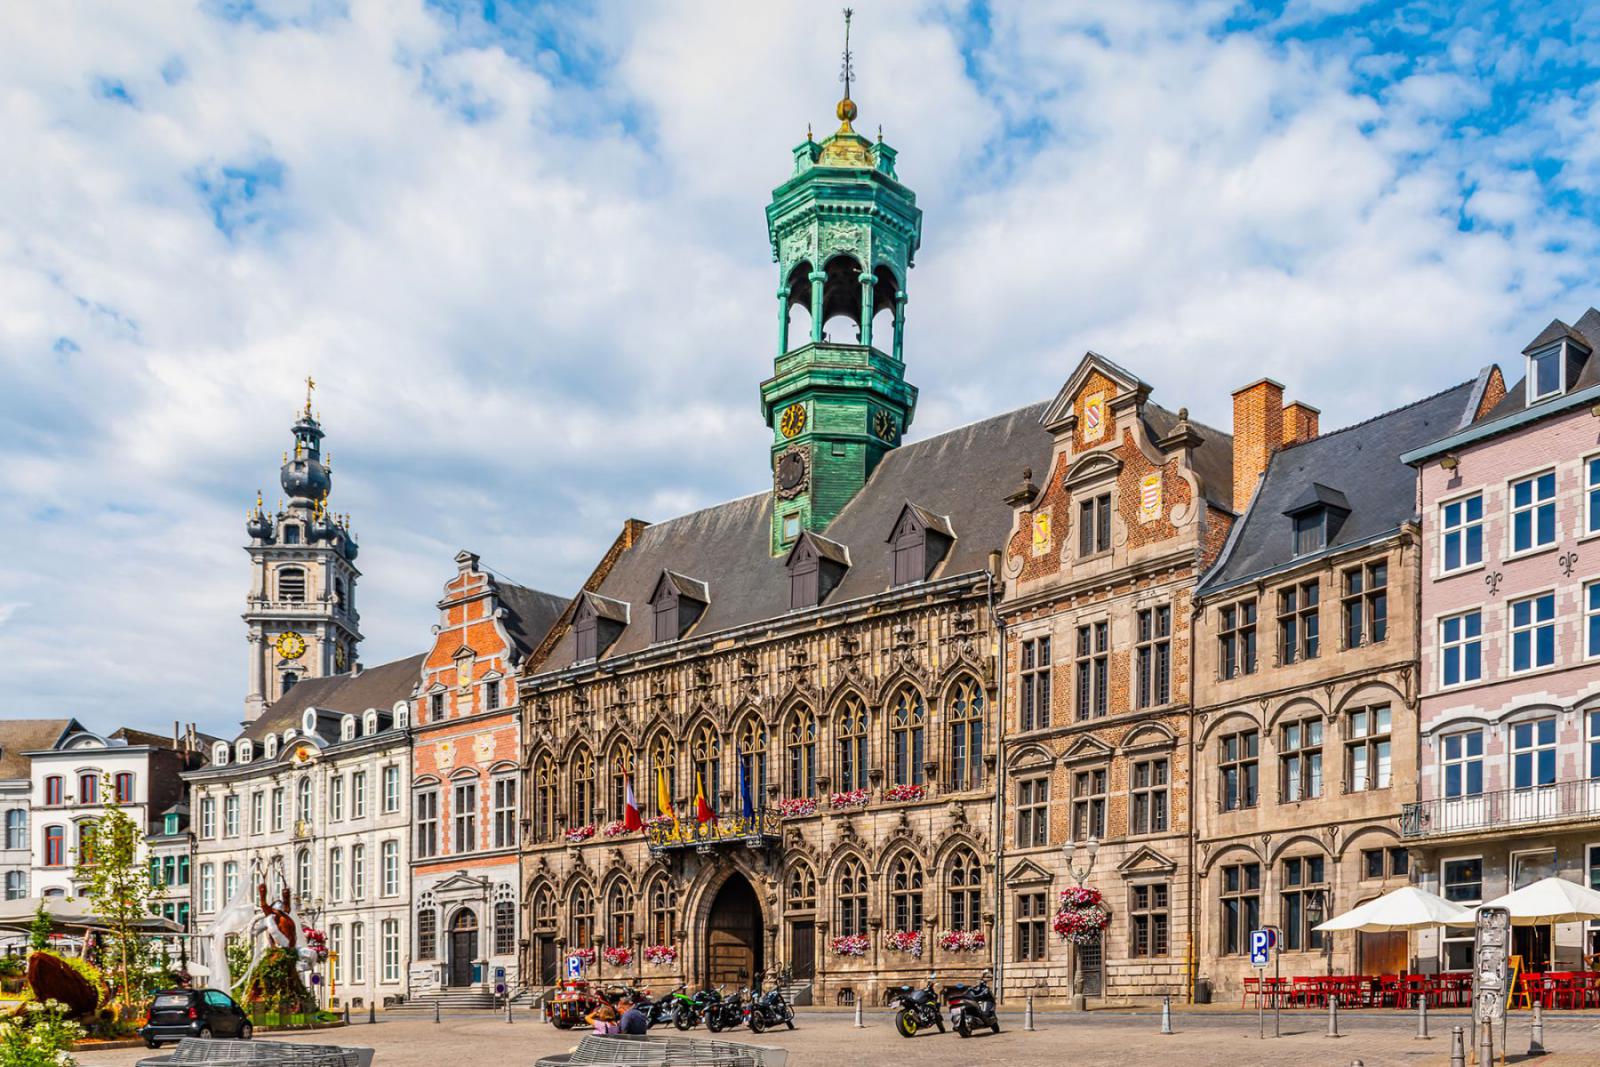 Het centrale plein van Mons met het stadhuis